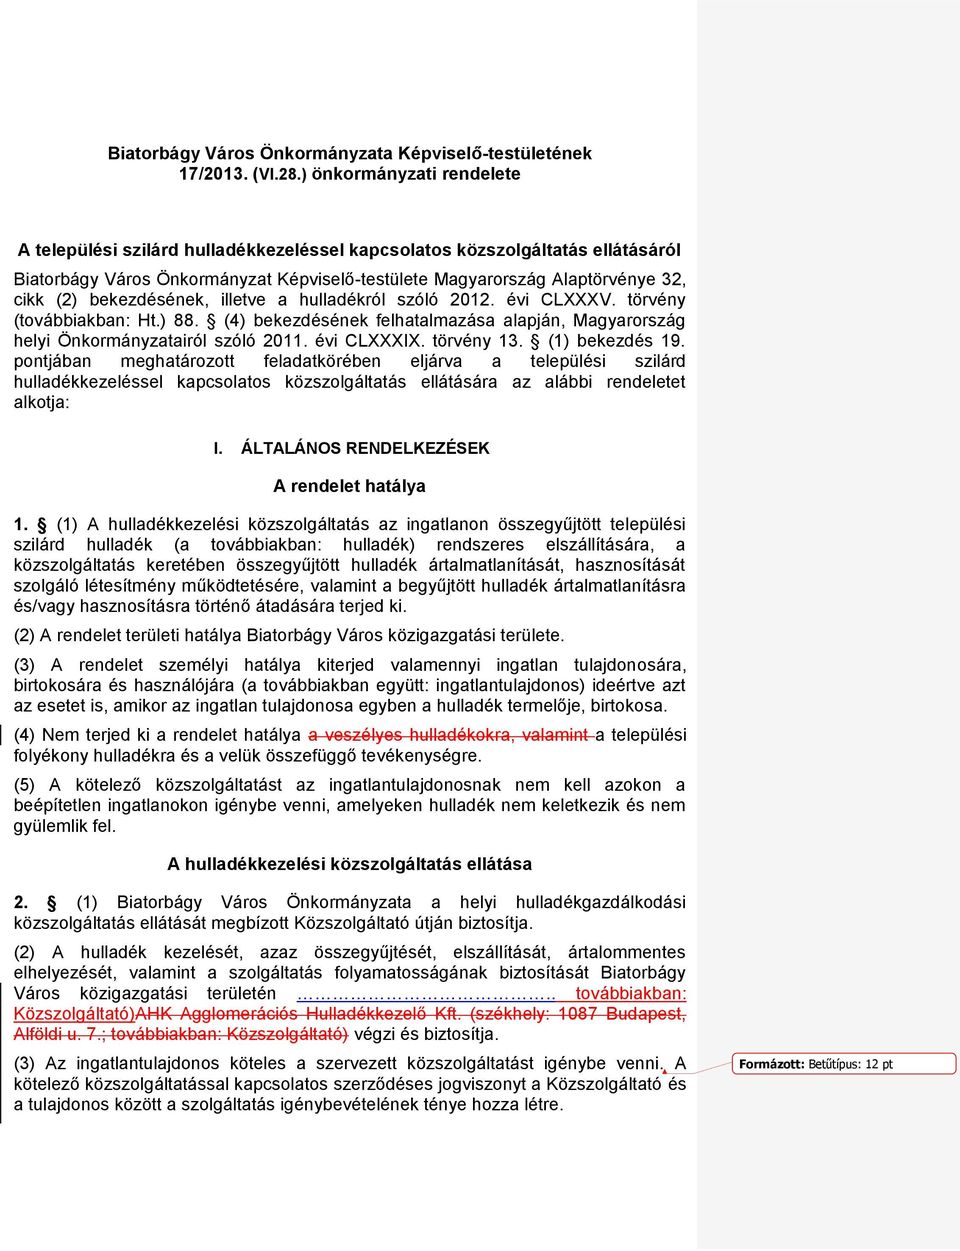 bekezdésének, illetve a hulladékról szóló 2012. évi CLXXXV. törvény (továbbiakban: Ht.) 88. (4) bekezdésének felhatalmazása alapján, Magyarország helyi Önkormányzatairól szóló 2011. évi CLXXXIX.